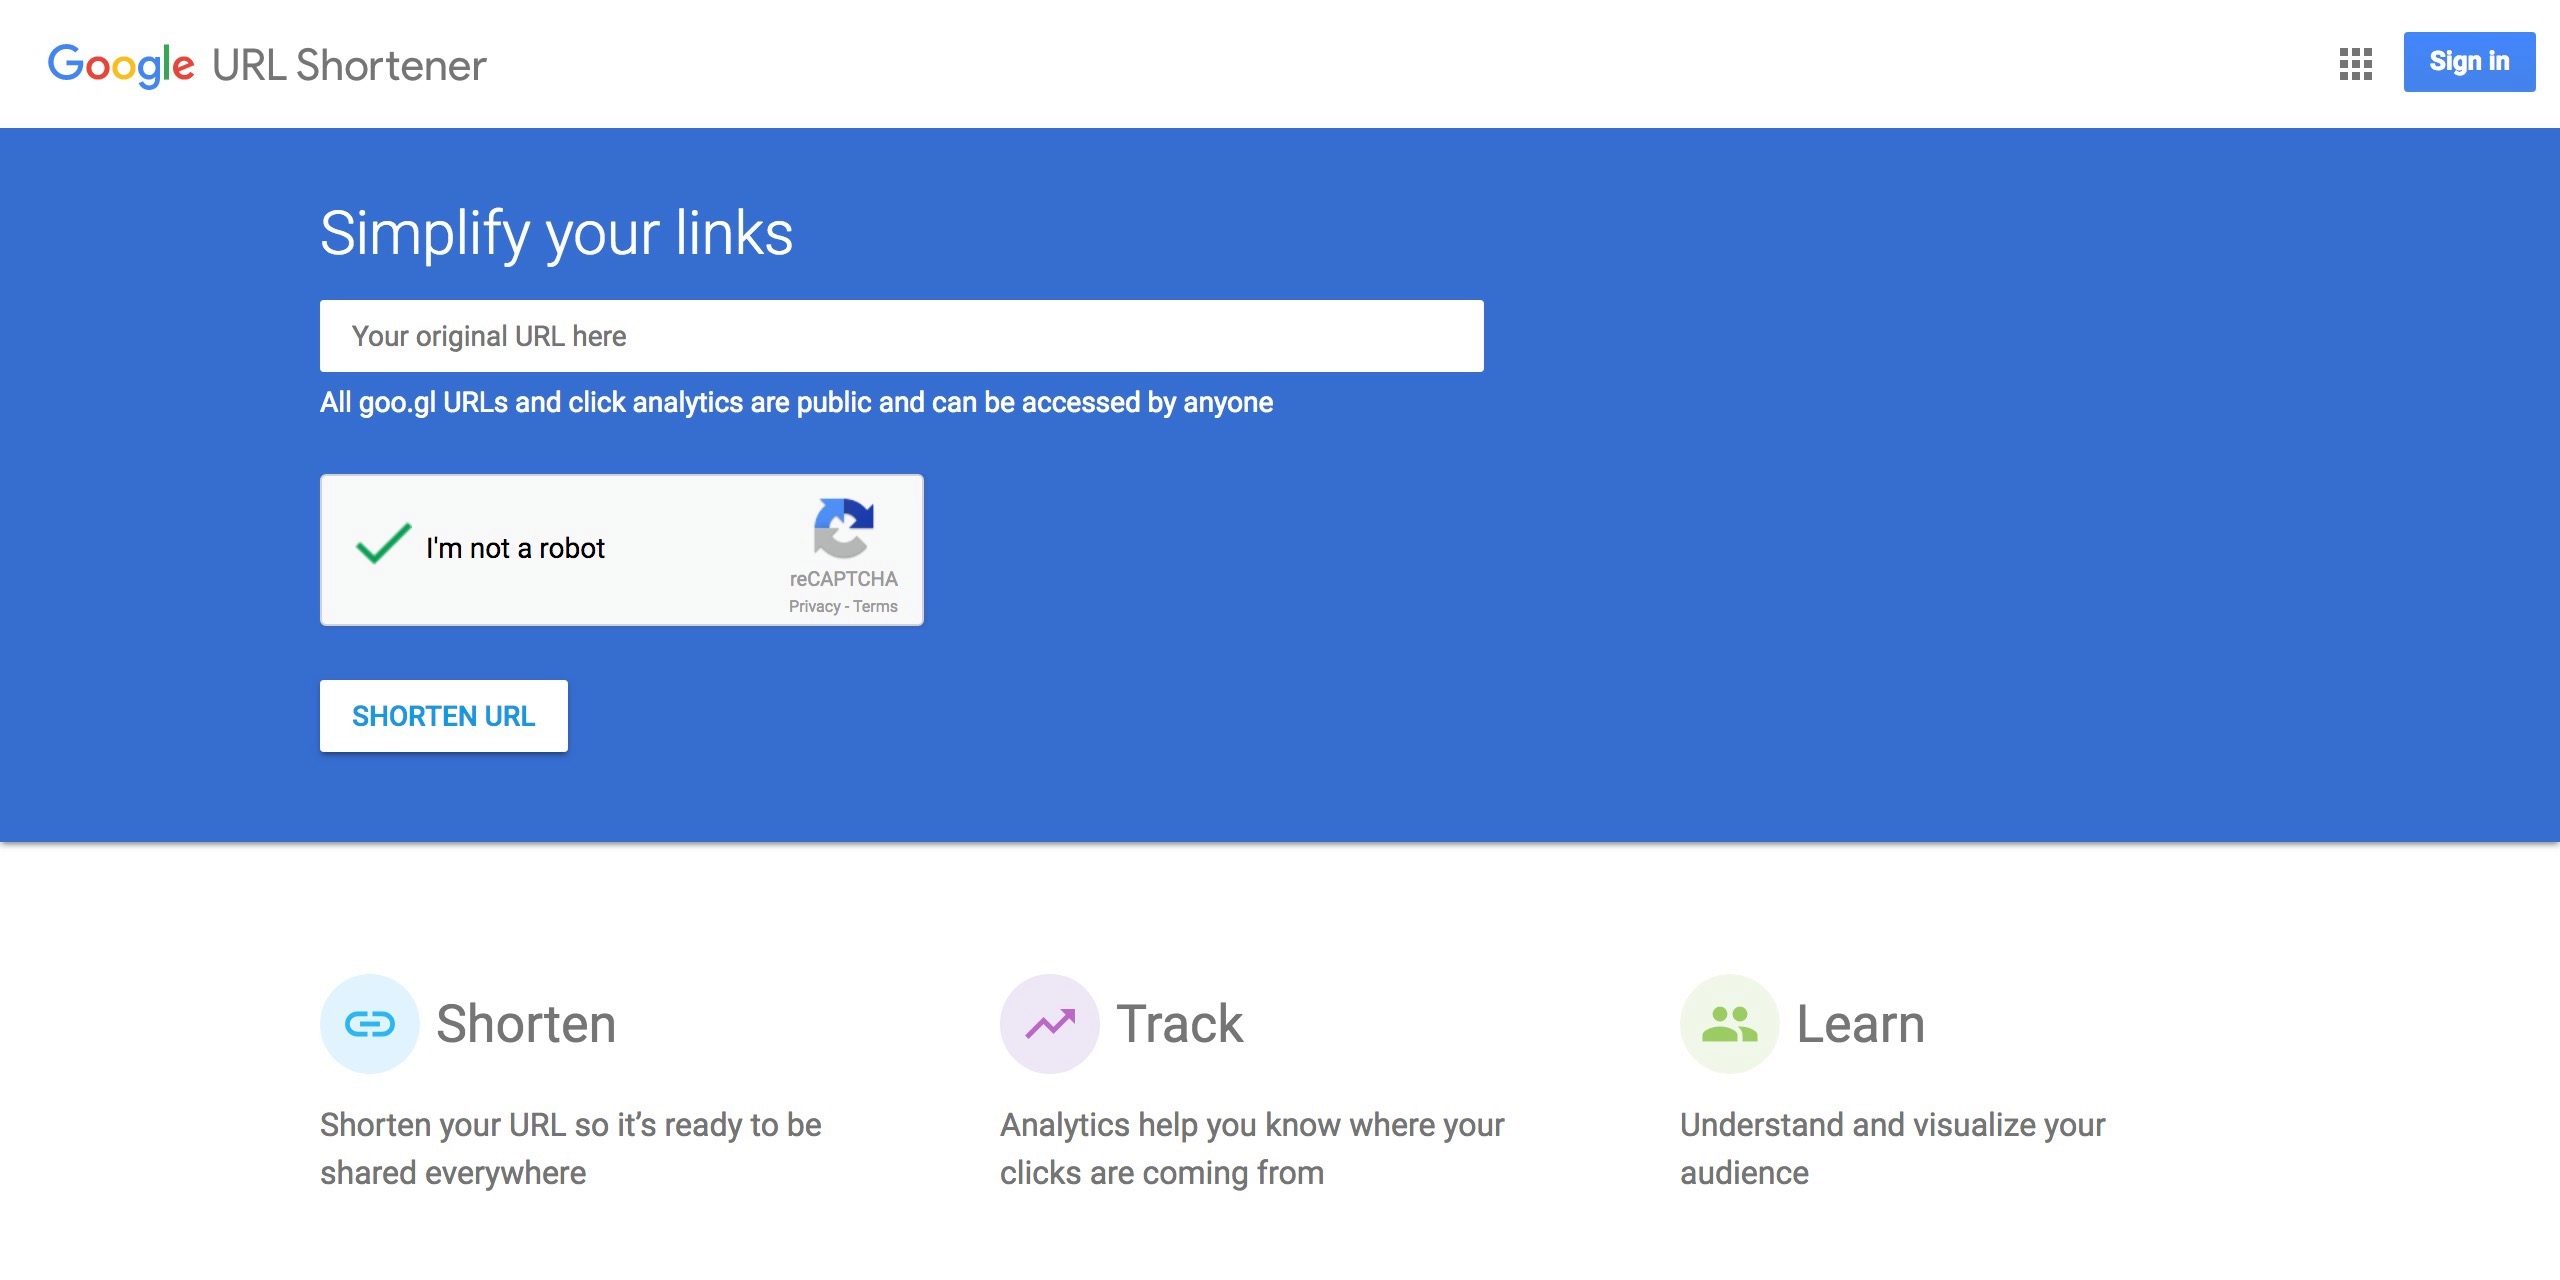 Google encerrando o encurtador de URL goo.gl no próximo ano, os links existentes continuarão funcionando